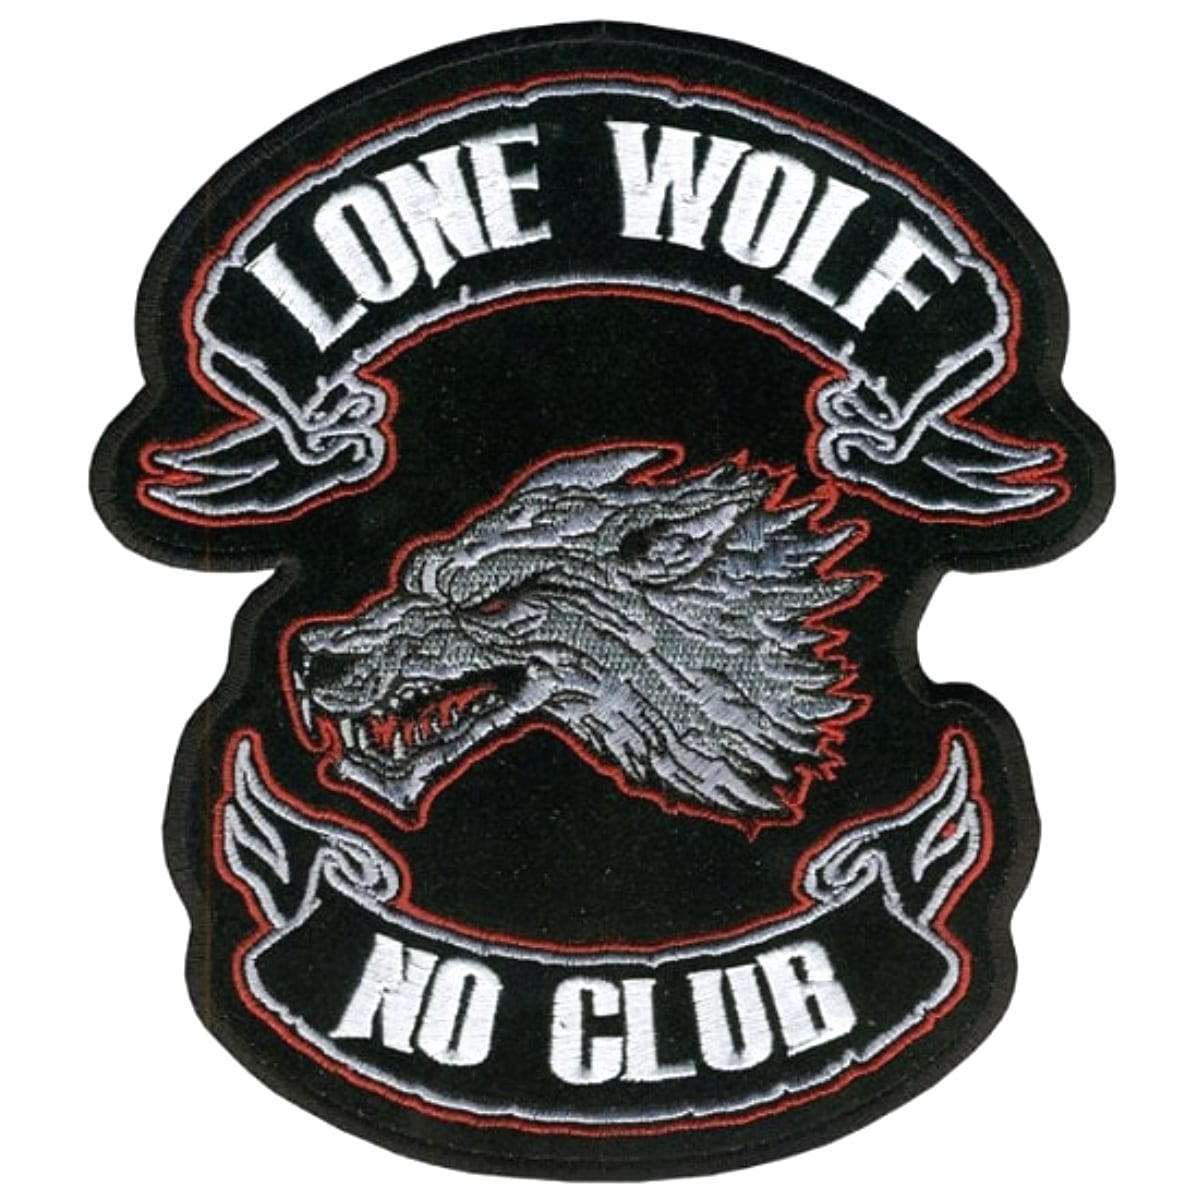 日本未発売! セール価格! ホットレザー 全4サイズ! [Lone Wolf No Club Patch] ローン・ウルフ・ノー・クラブ ワッペン! 狼 パッチ 米国バイカー専門ブランドから直輸入! ウェアのカスタムに! 布製 アイロン対応 サイズ大・特大